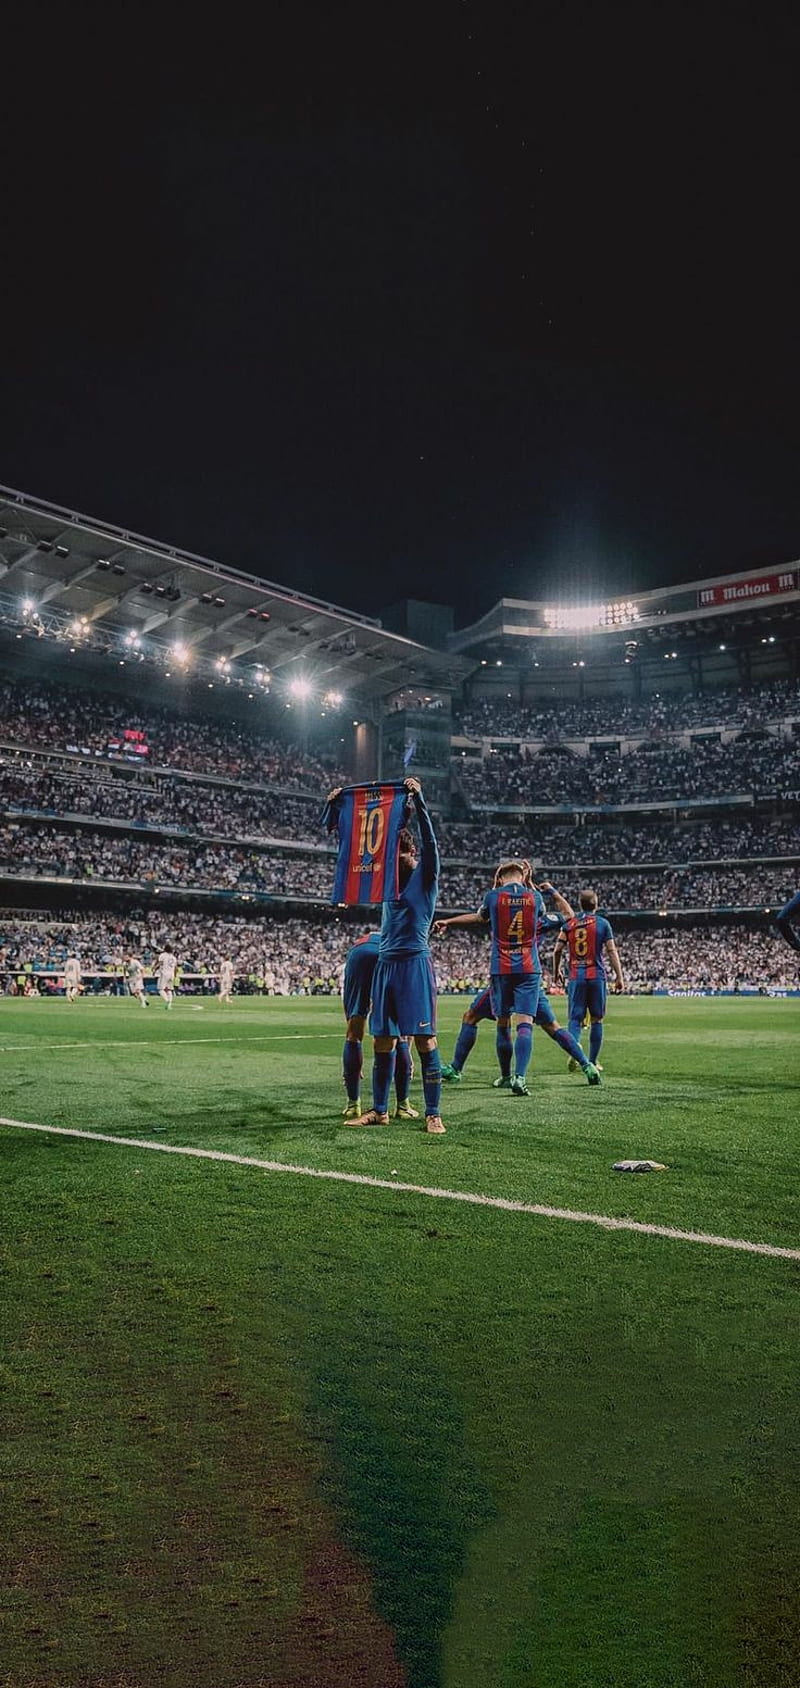 Hình nền của Messi sẽ làm cho điện thoại của bạn trở nên đặc biệt và ấn tượng. Hãy xem bức tranh này để hiểu rõ giá trị phi thường mà hình ảnh này mang lại.